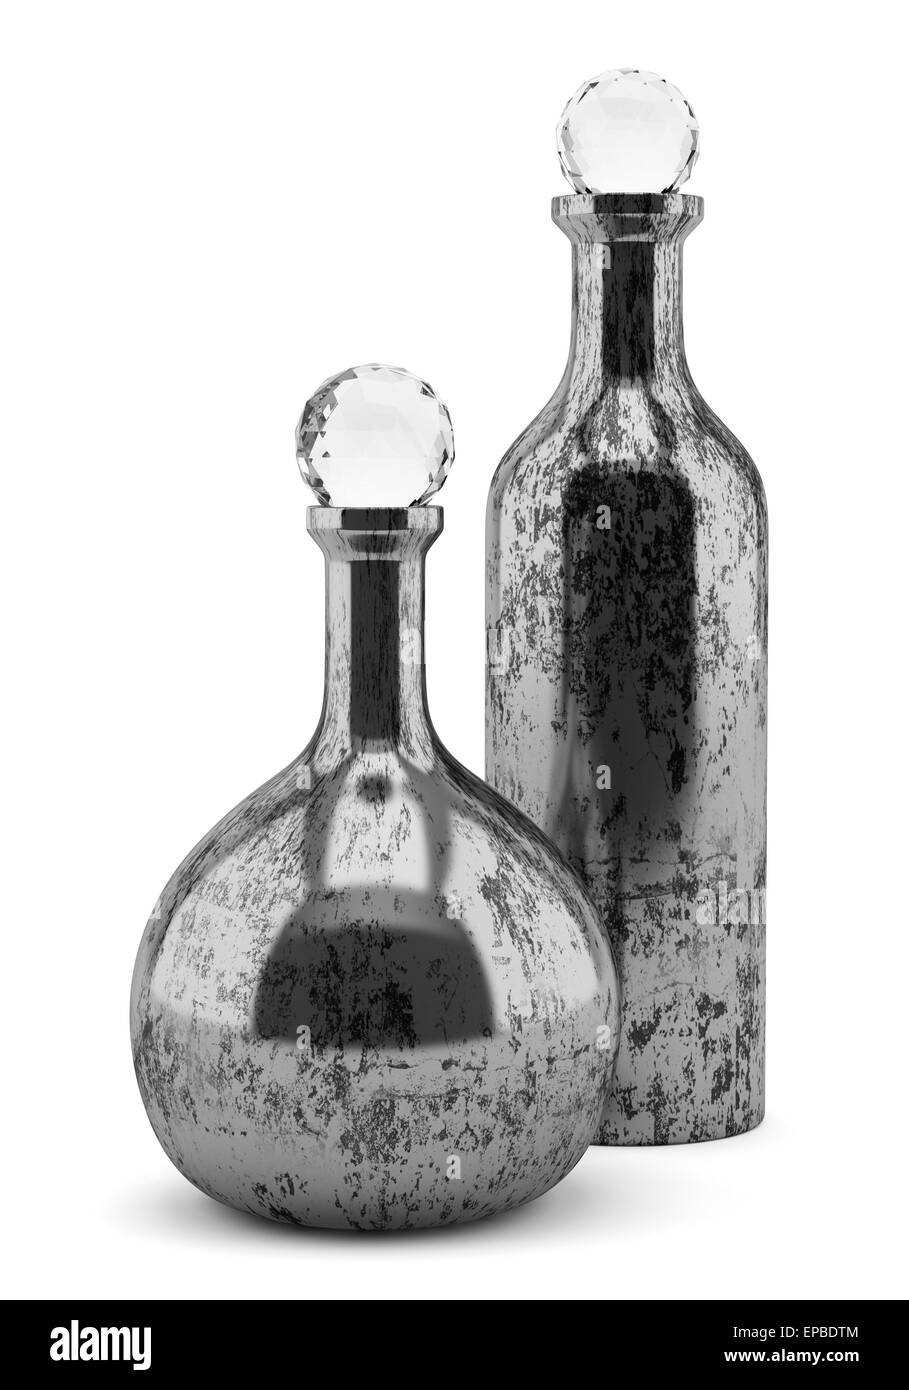 Deux bouteilles métallique isolé sur fond blanc Banque D'Images